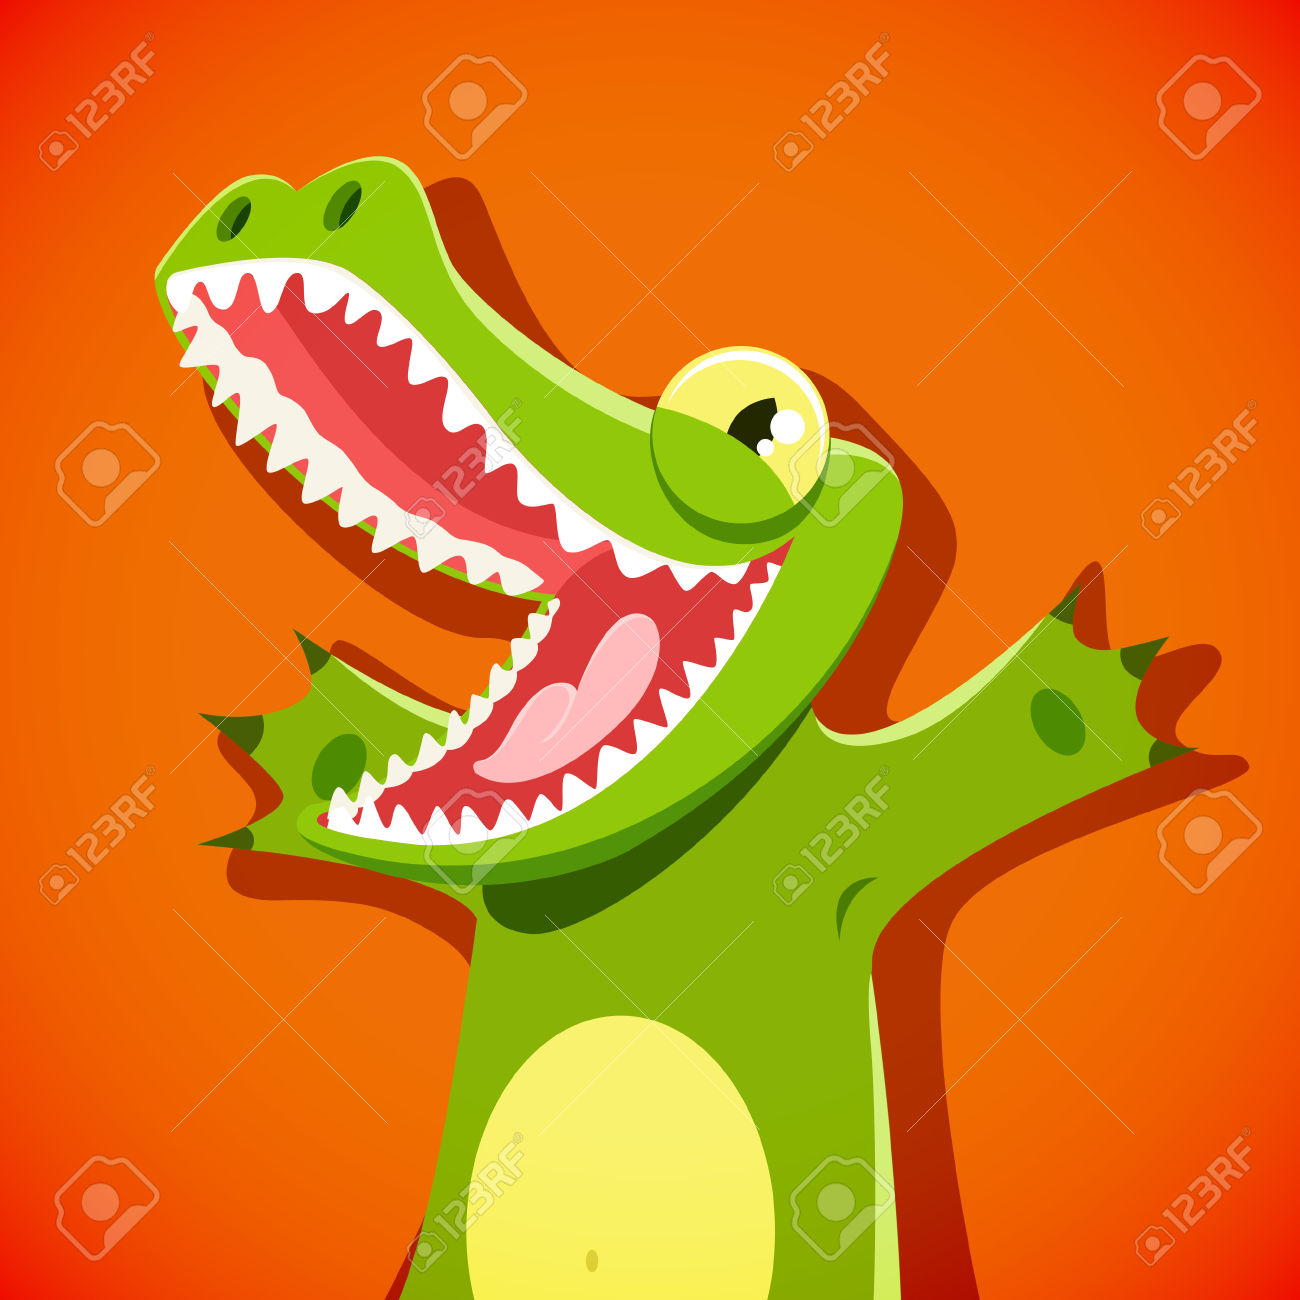 /media/uploads/xCrocoDiffusion/46275289-crocodile-mignon-dr-le-avec-un-vecteur-de-visage-souriant-illustration-eps-10-fichier-banque-d-images.jpg